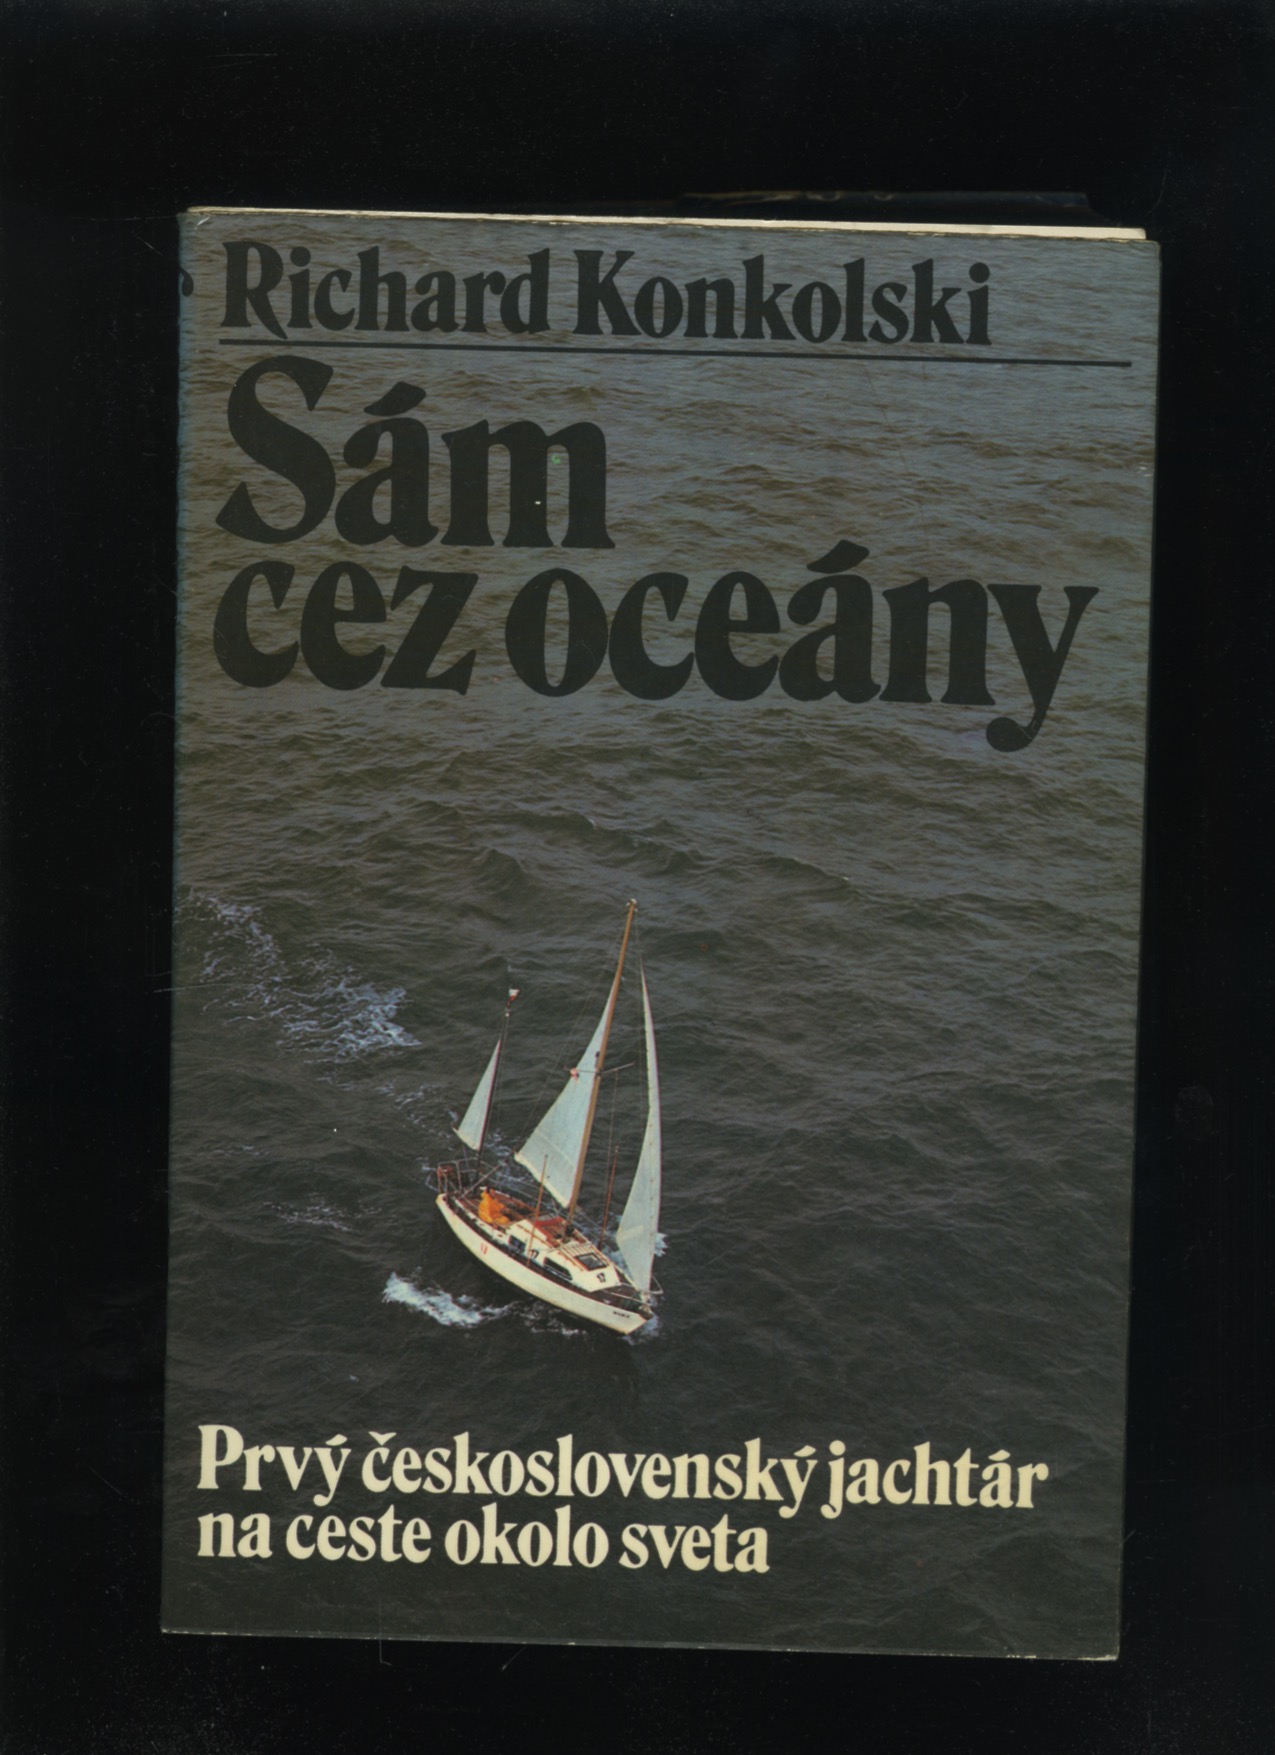 Sám cez oceány (Richard Konkolski)